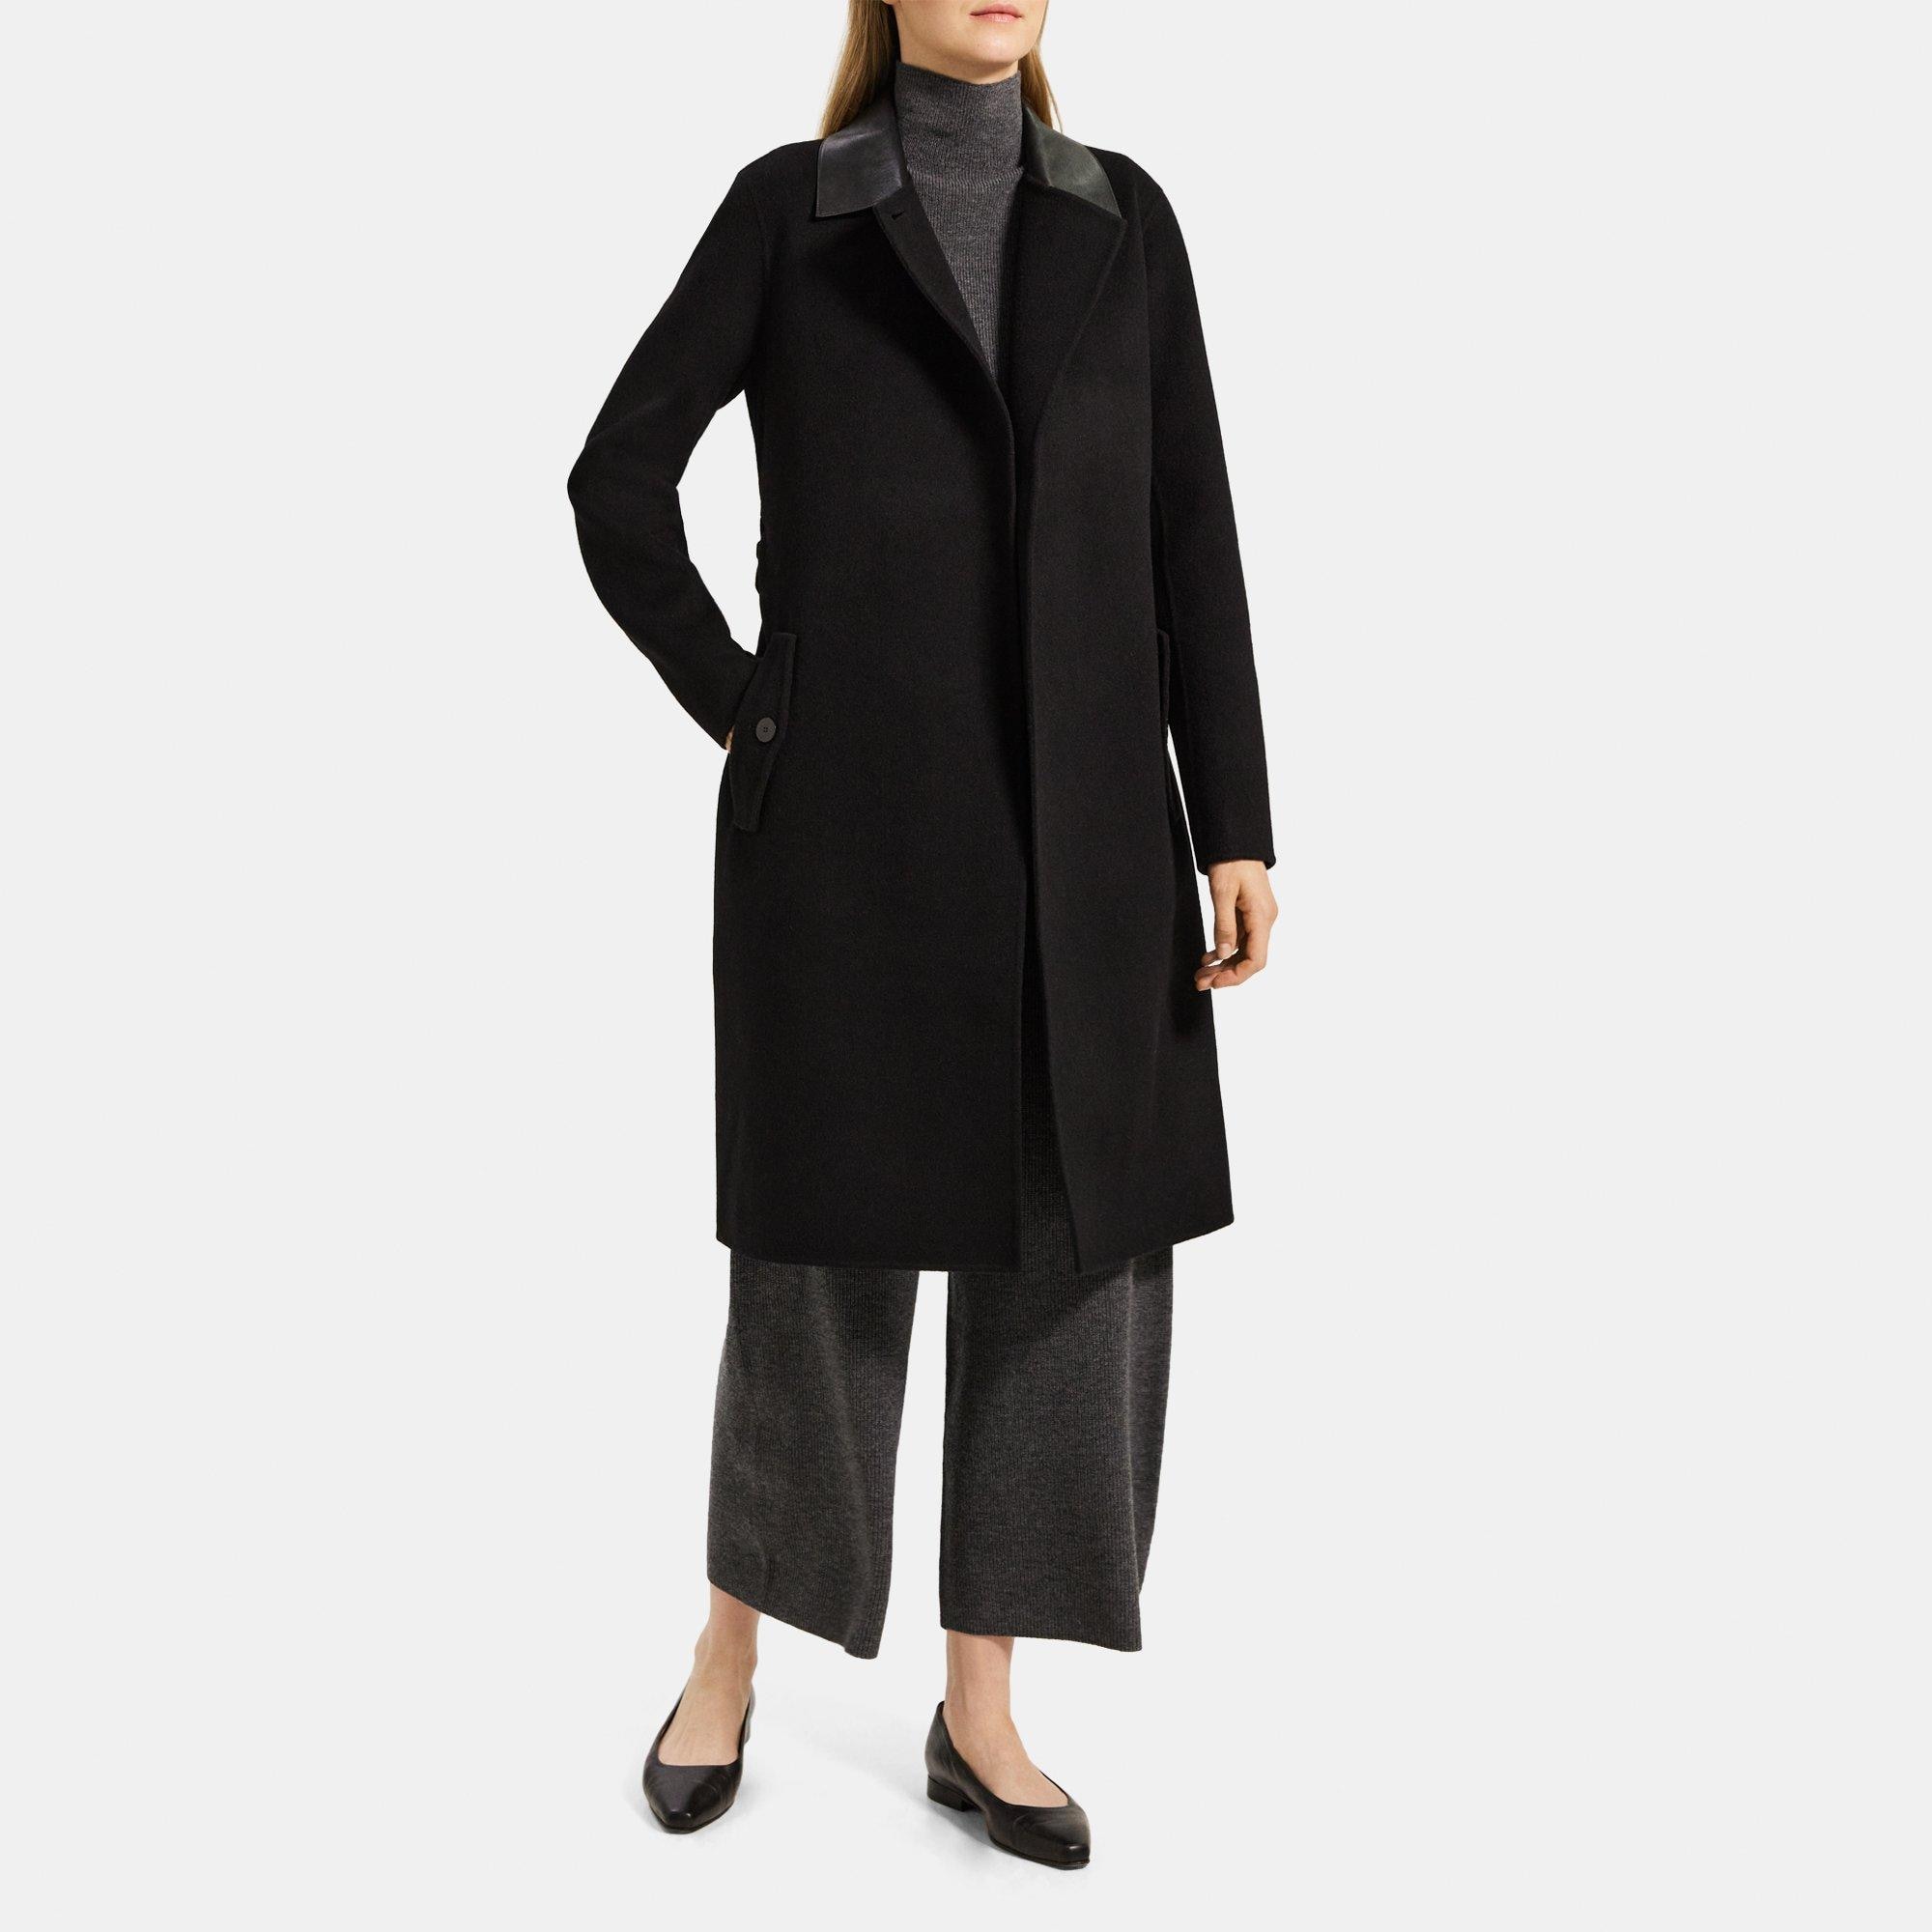 Women's cashmere coat Long Trench Coat black Woolen coat, Color:black, 2 :  : Clothing, Shoes & Accessories